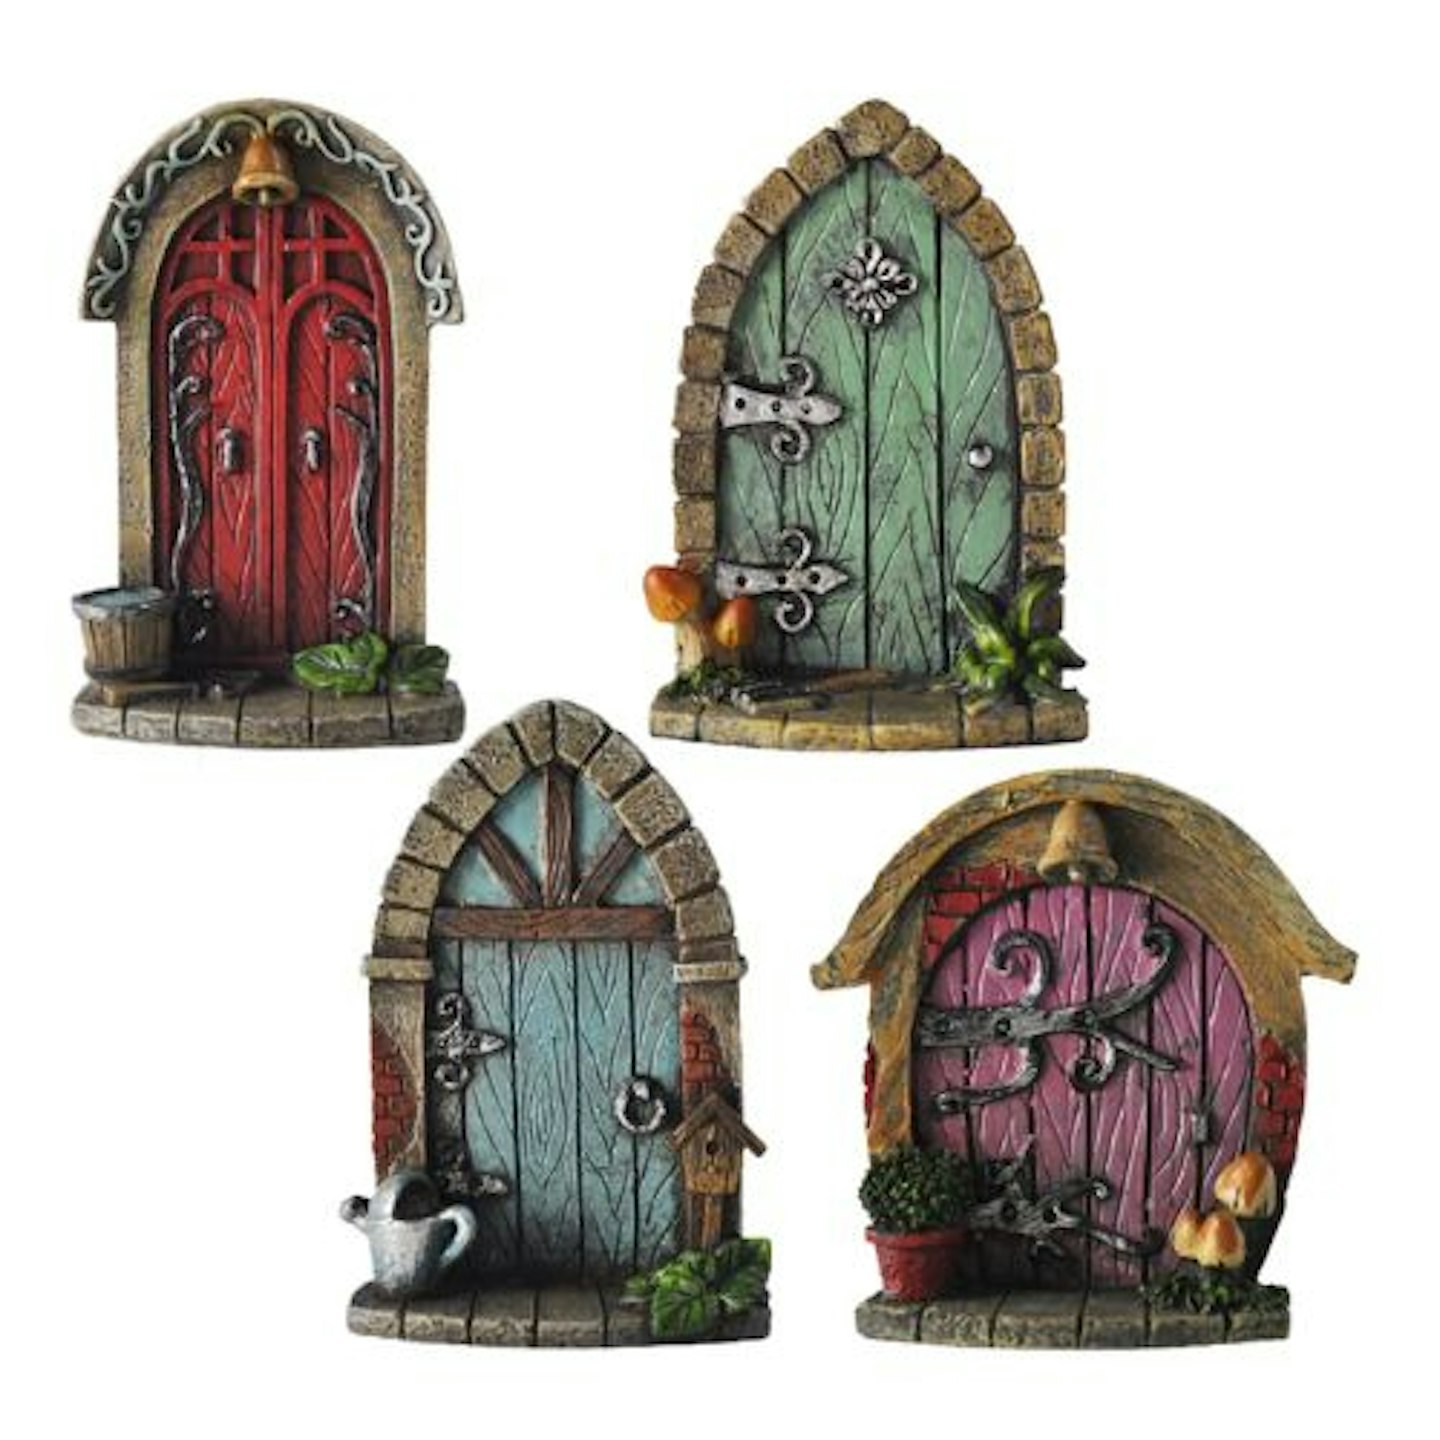 Miniature Fairy Garden Doors